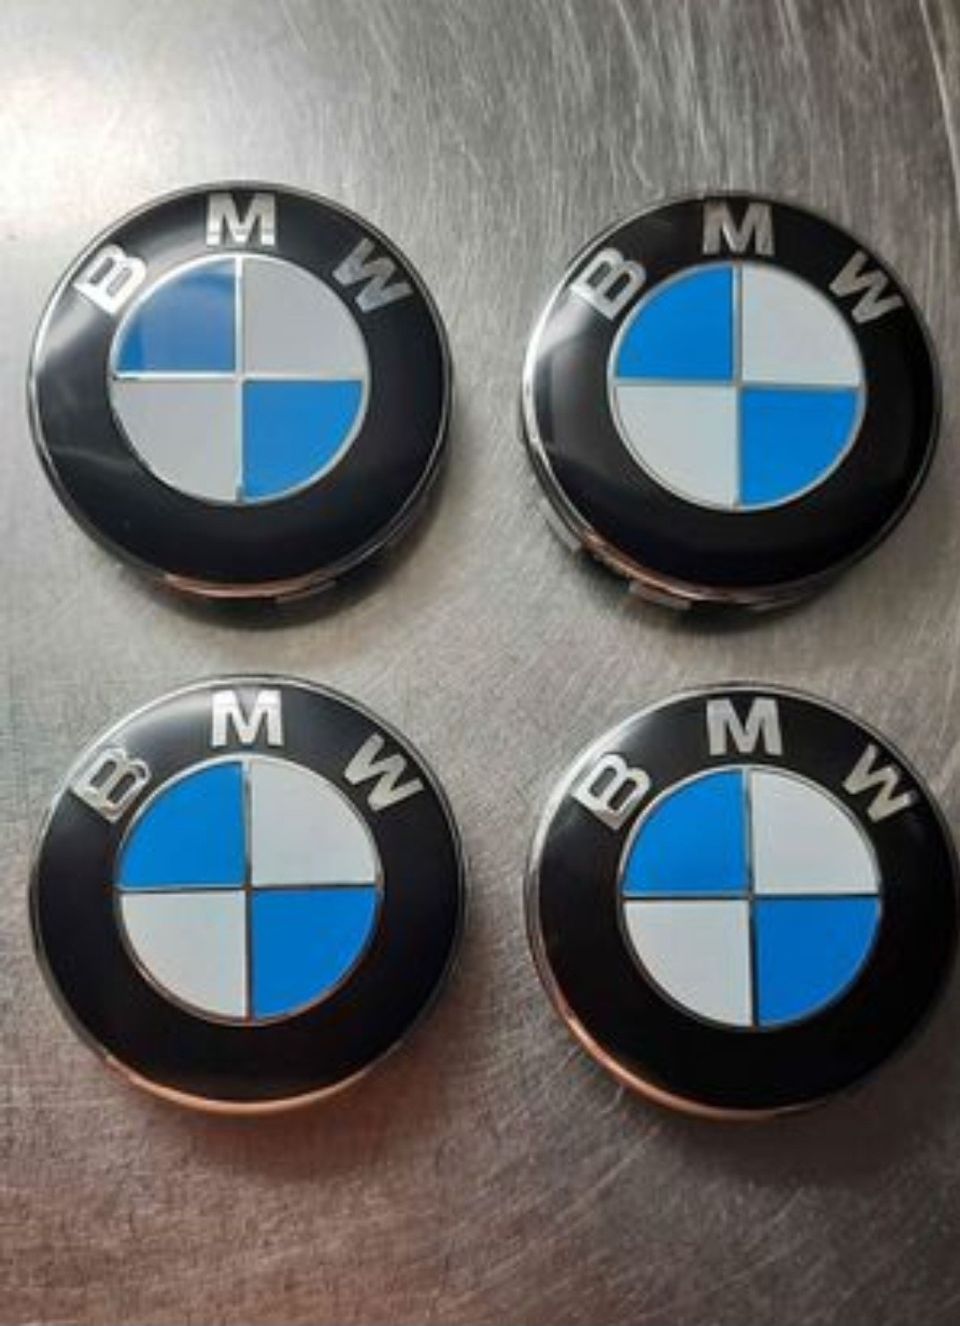 BMW:n vanteisiin keskikupit